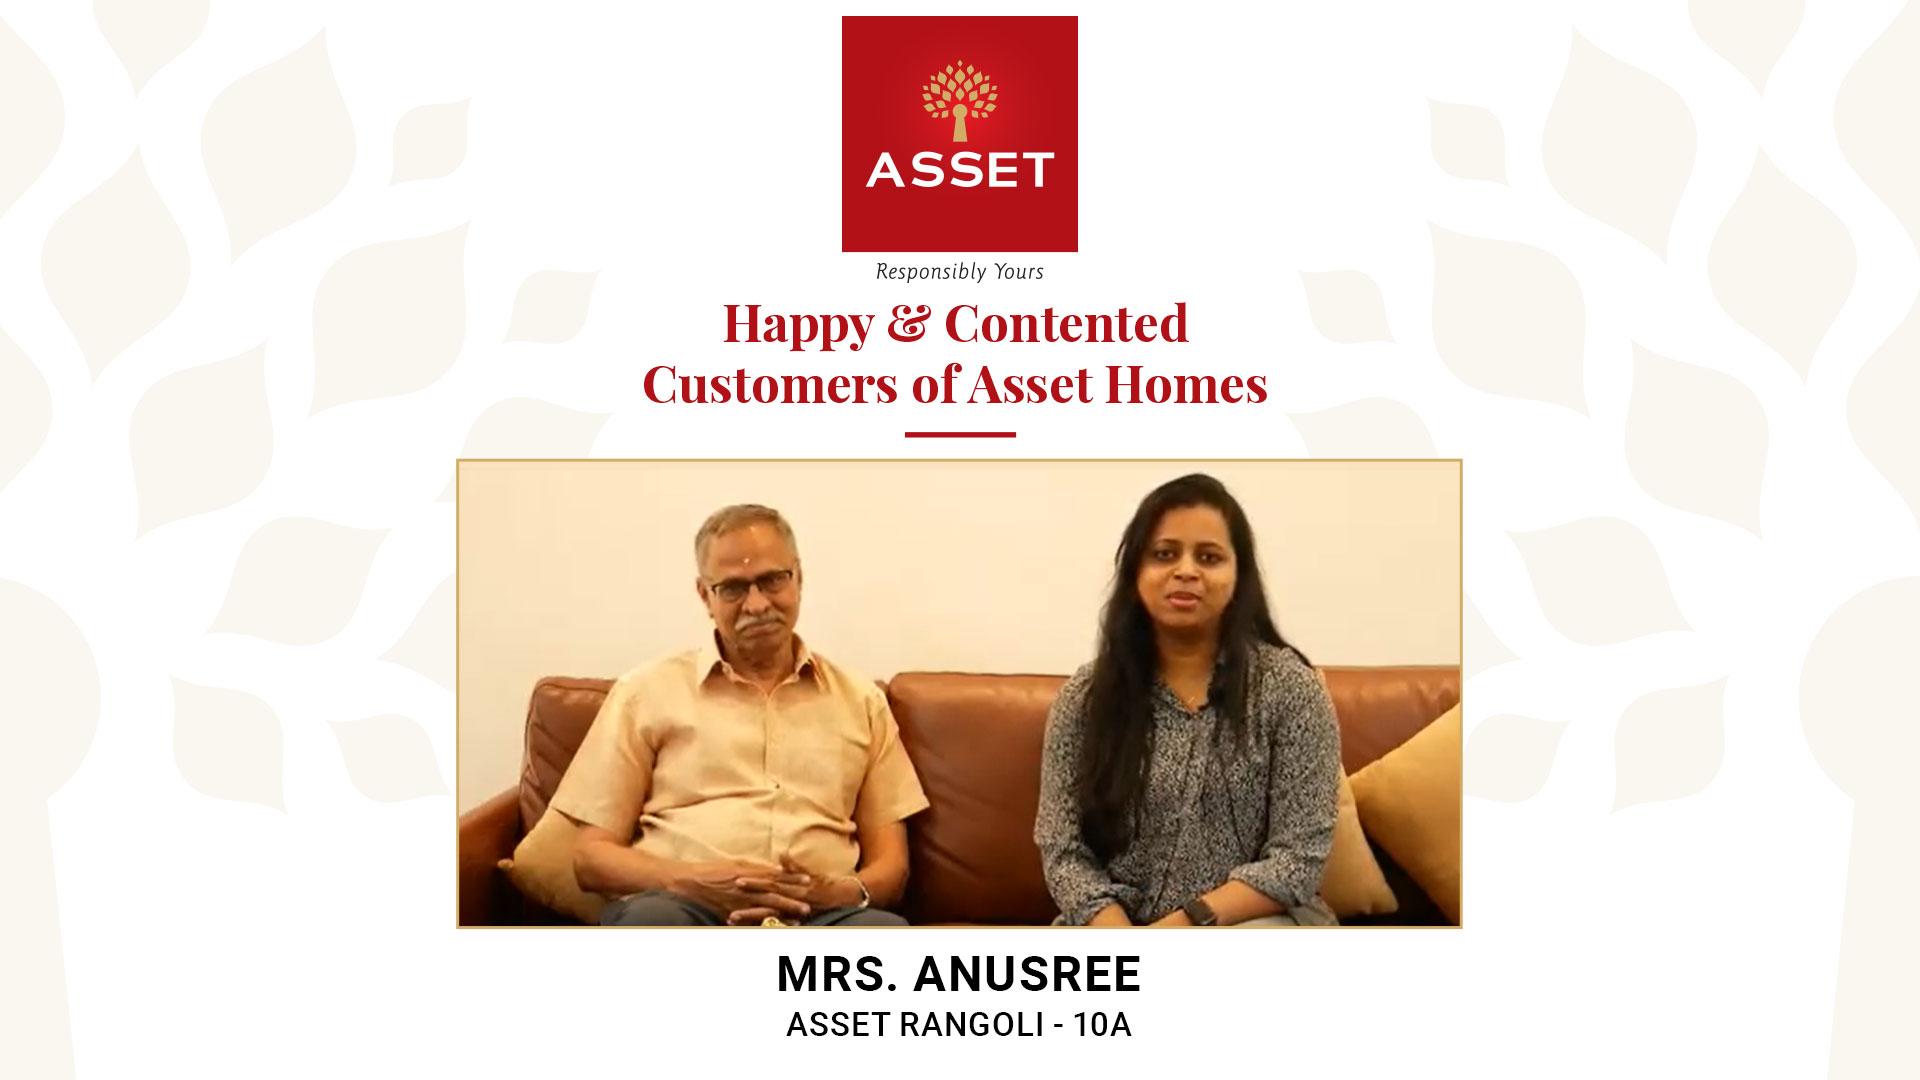 Mrs. Anusree, Asset Rangoli – 10A